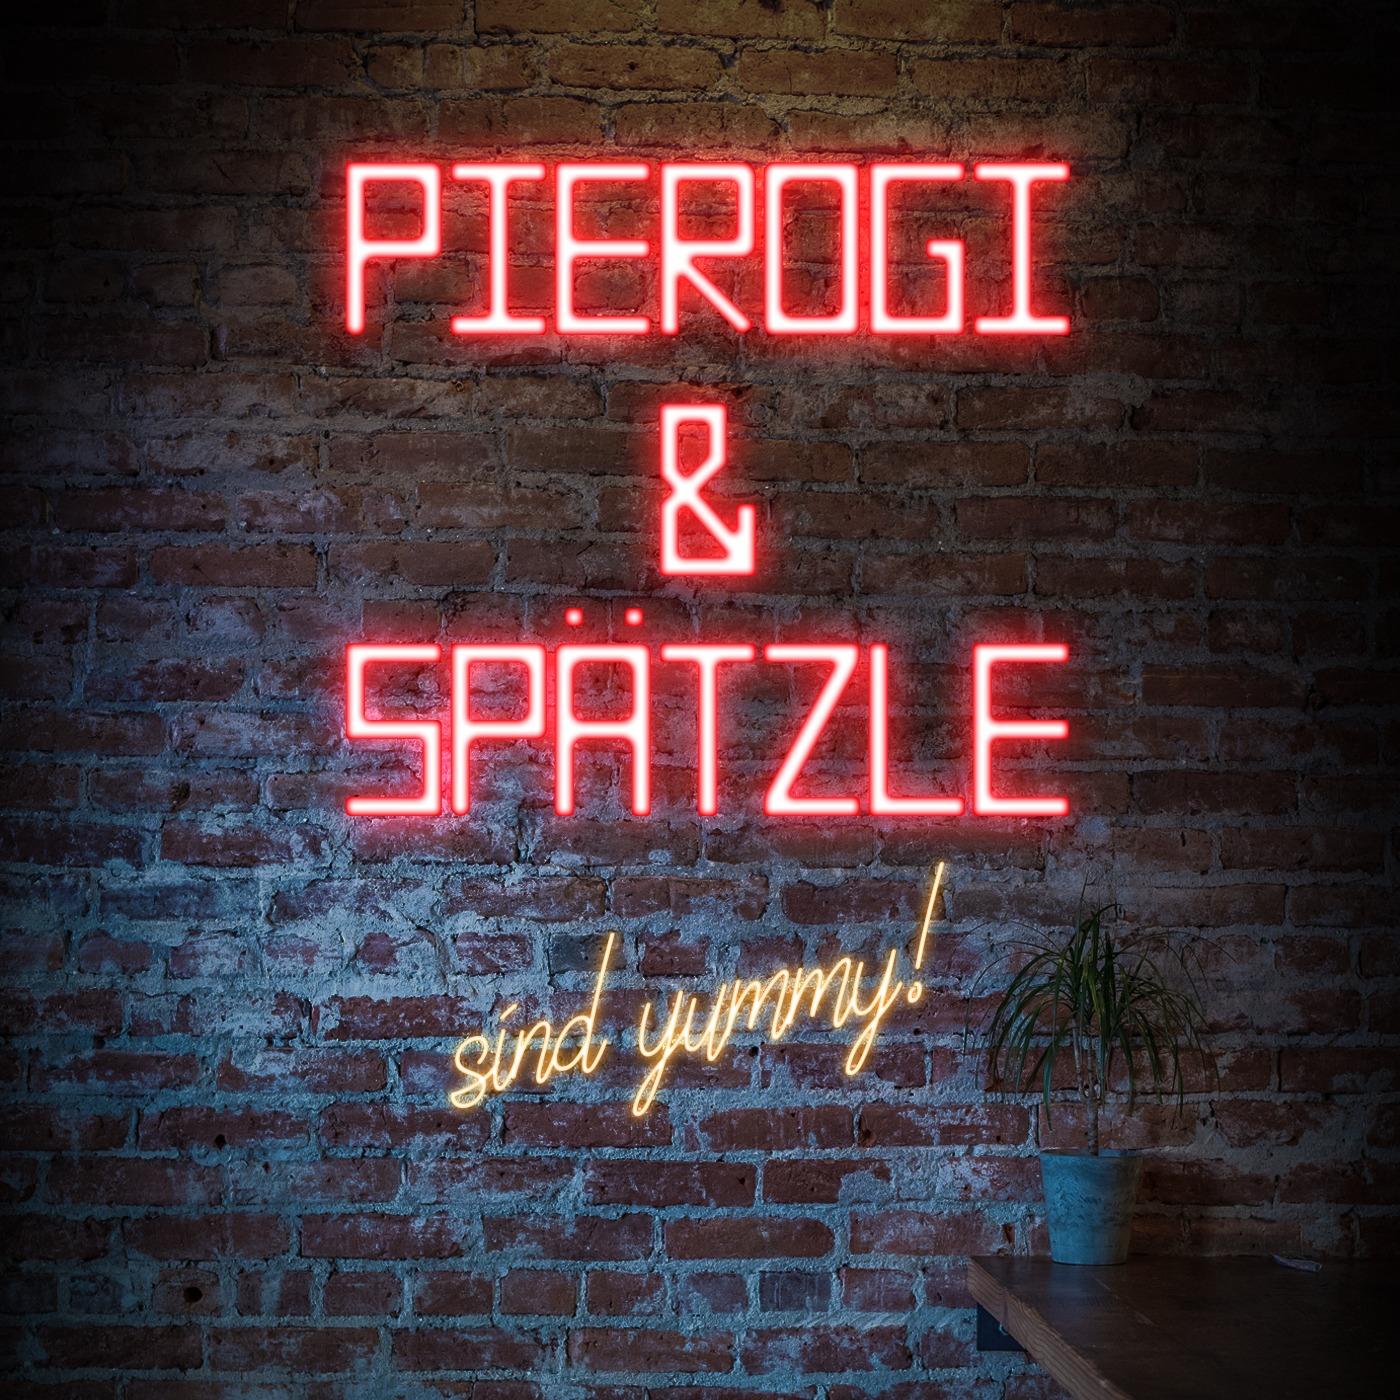 Pierogi & Spätzle sind yummy!